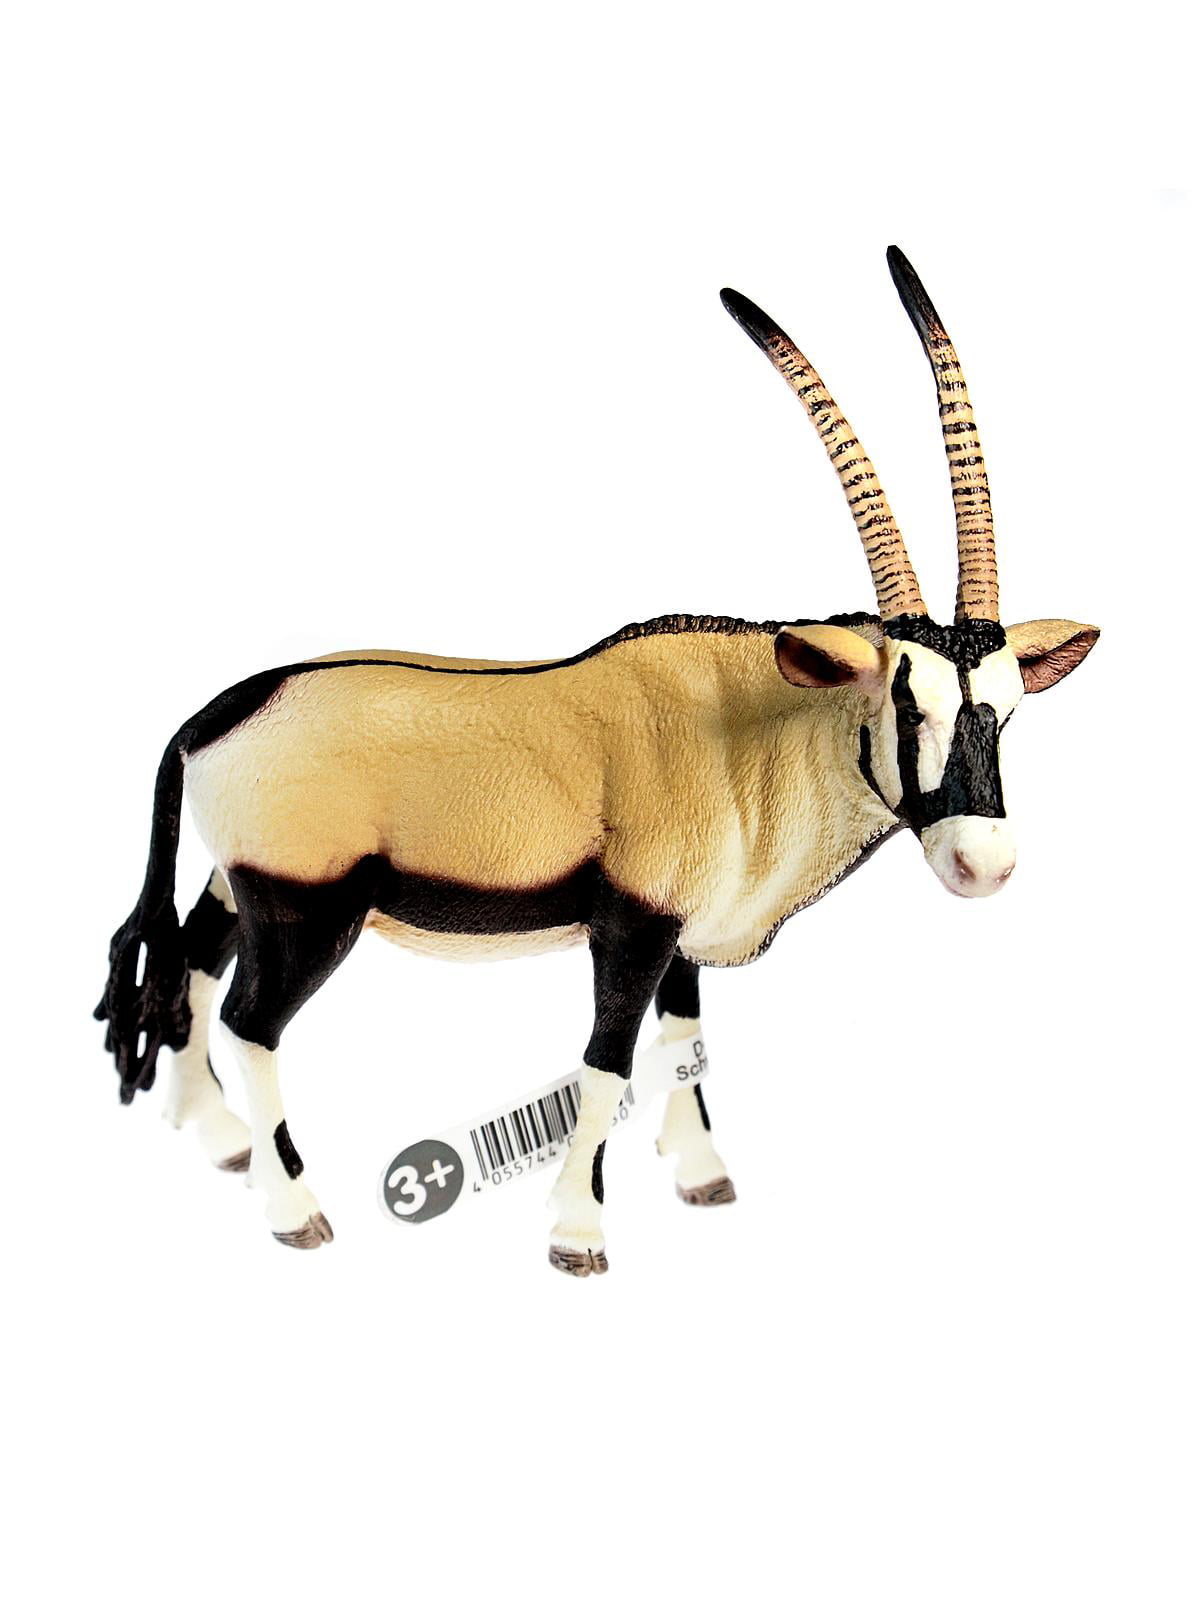 Argali Animals Kids Educuational Toys Details about   Home Décor 2 x Figurines Realistic Oryx 